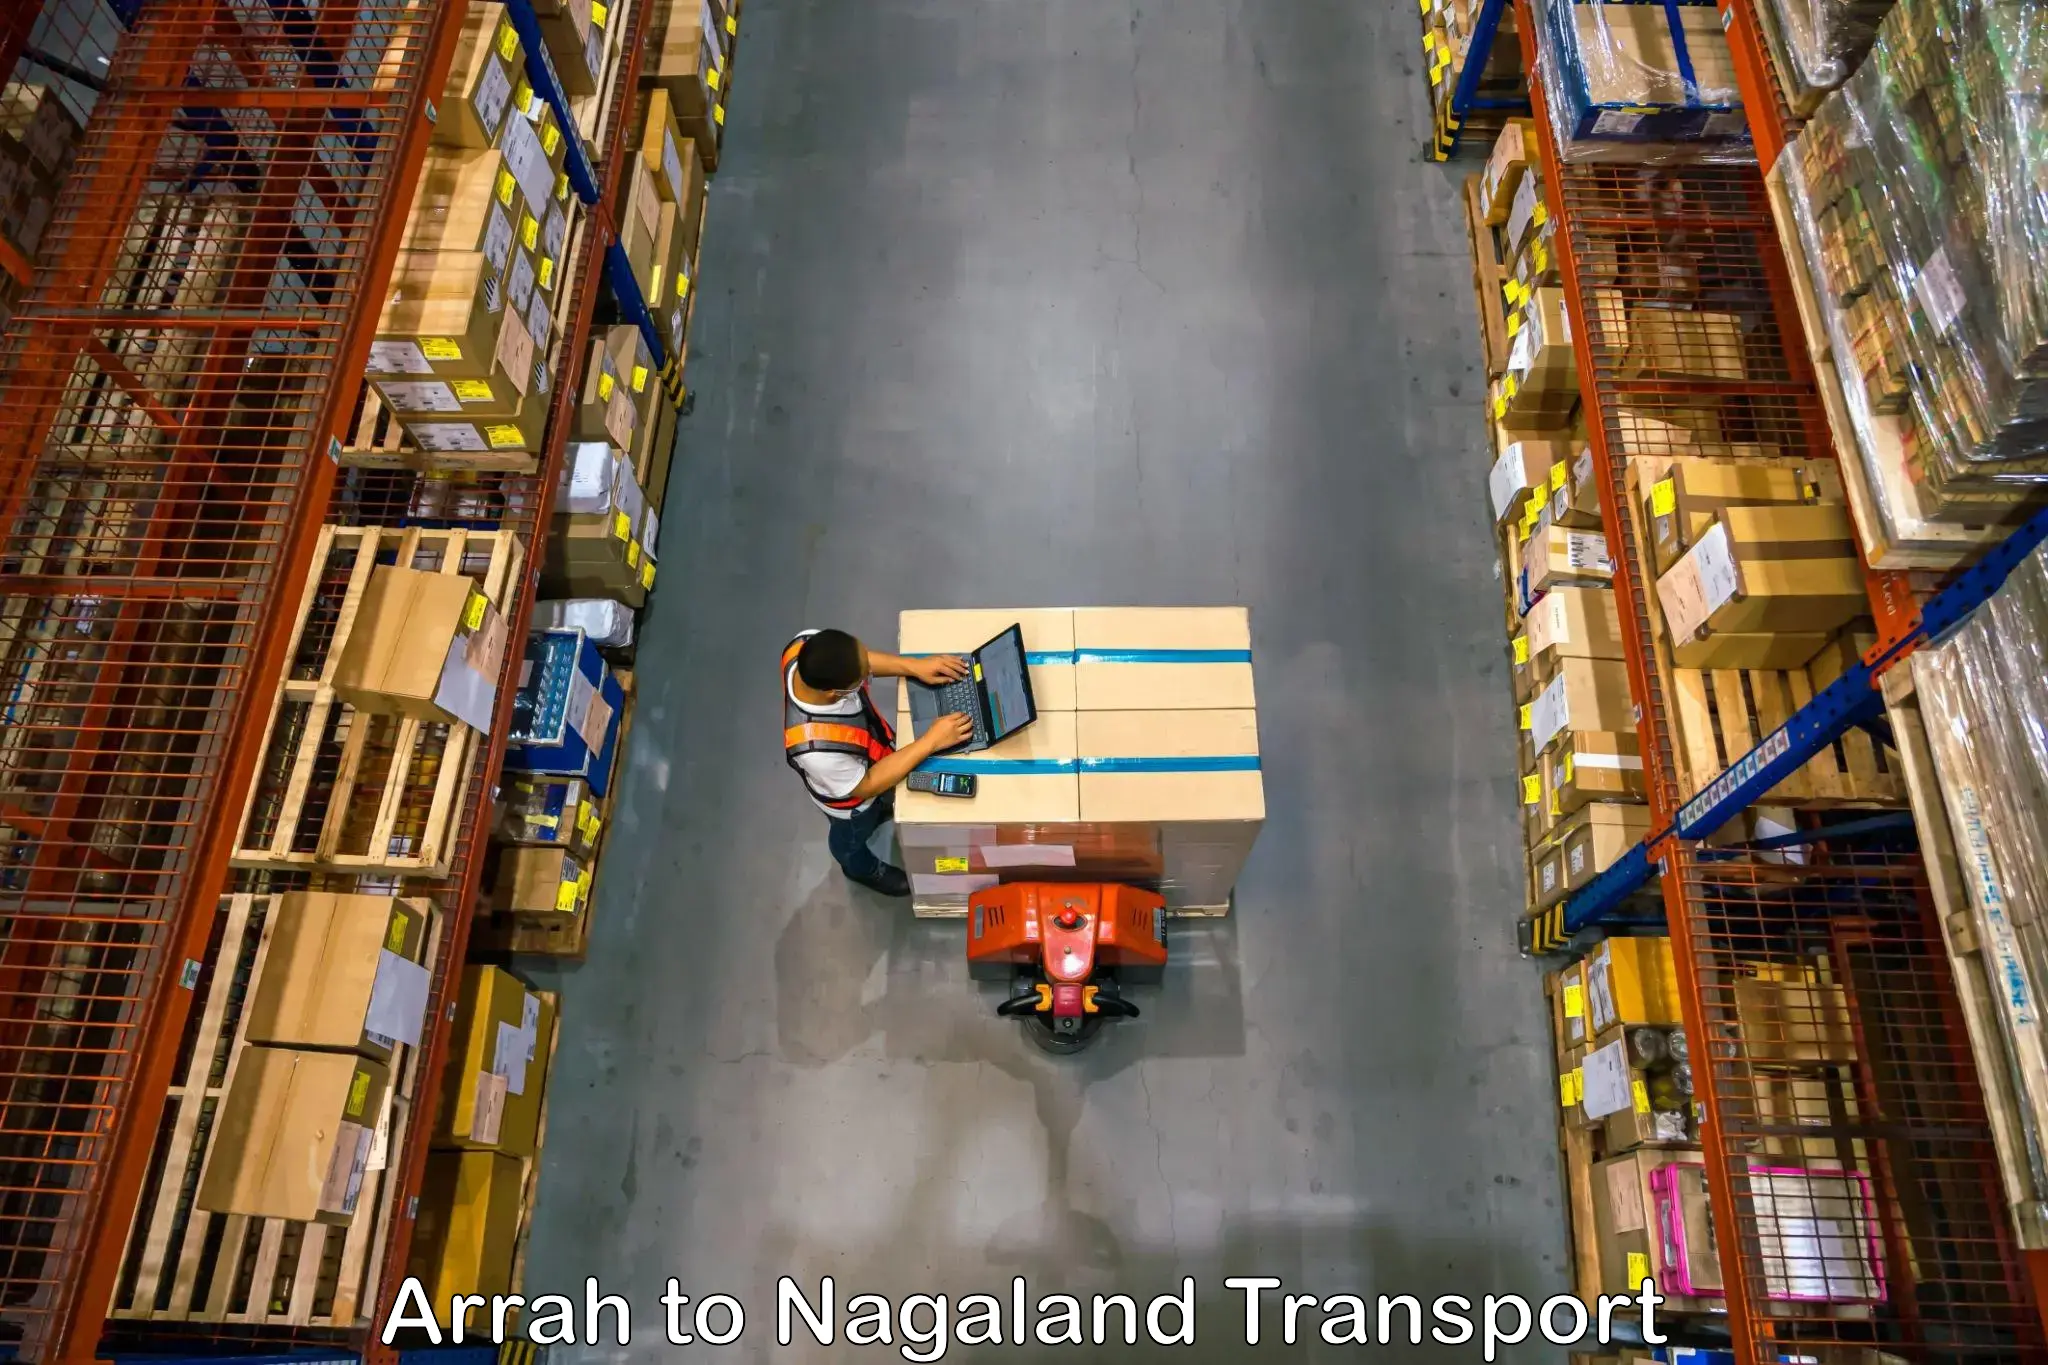 Daily transport service Arrah to NIT Nagaland